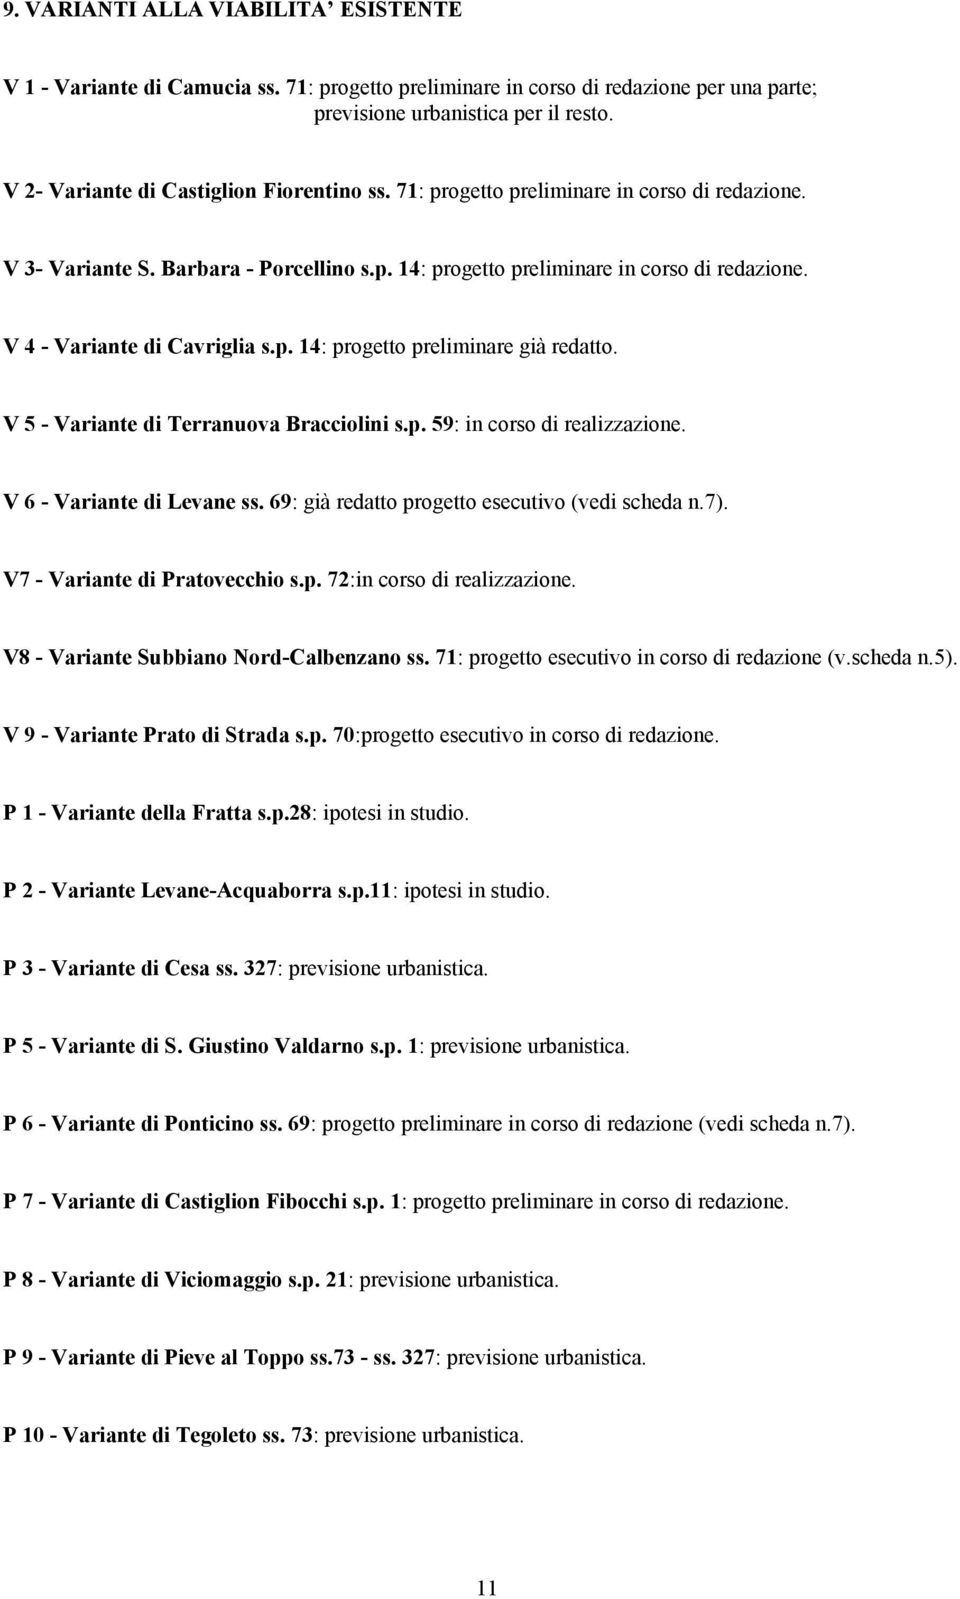 V 4 - Variante di Cavriglia s.p. 14: progetto preliminare già redatto. V 5 - Variante di Terranuova Bracciolini s.p. 59: in corso di realizzazione. V 6 - Variante di Levane ss.